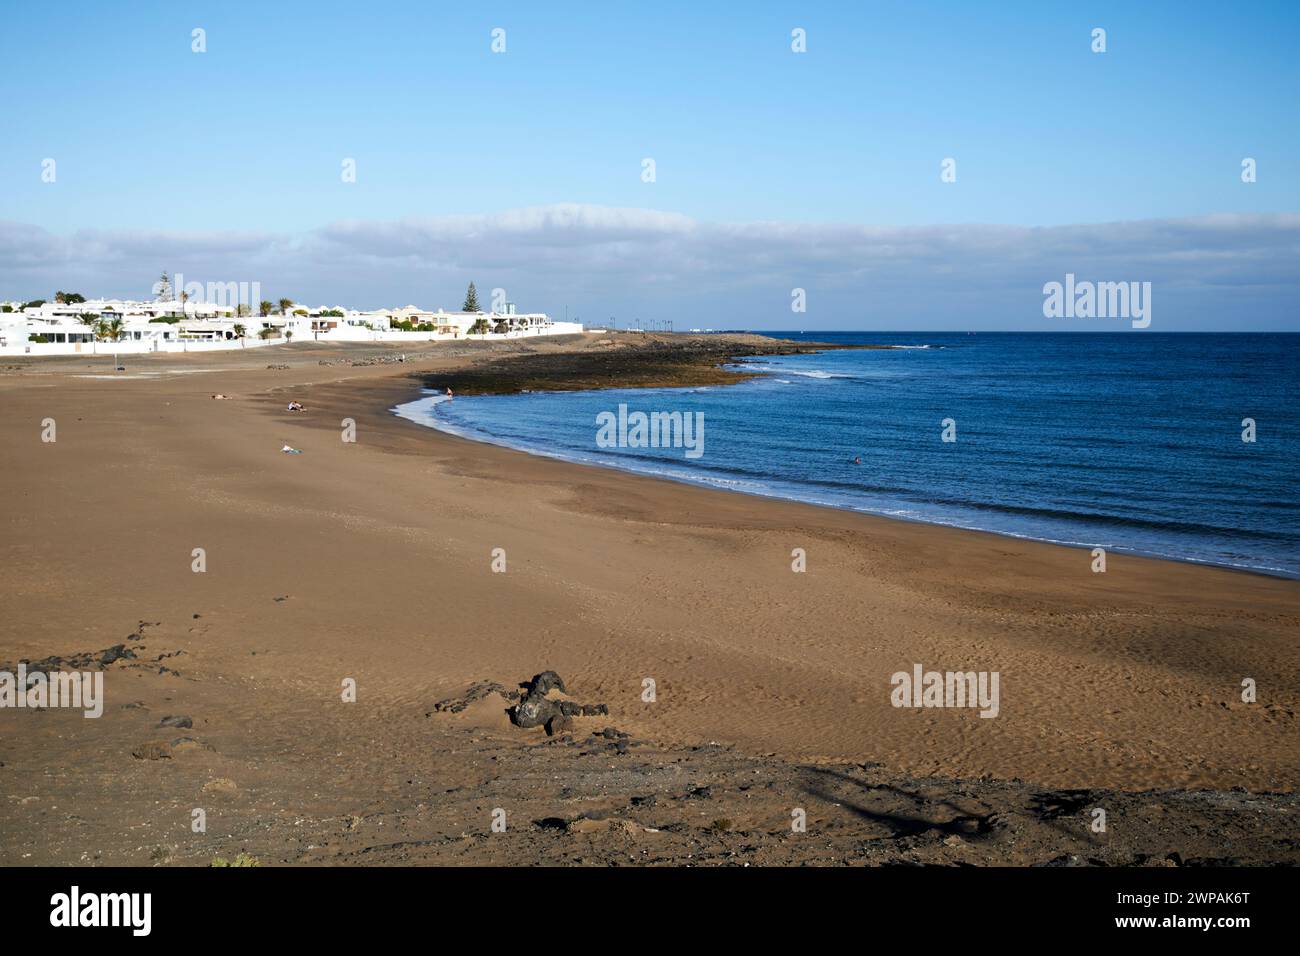 Playa de la Concha Playa Honda, Lanzarote, Canary Islands, spain Stock Photo